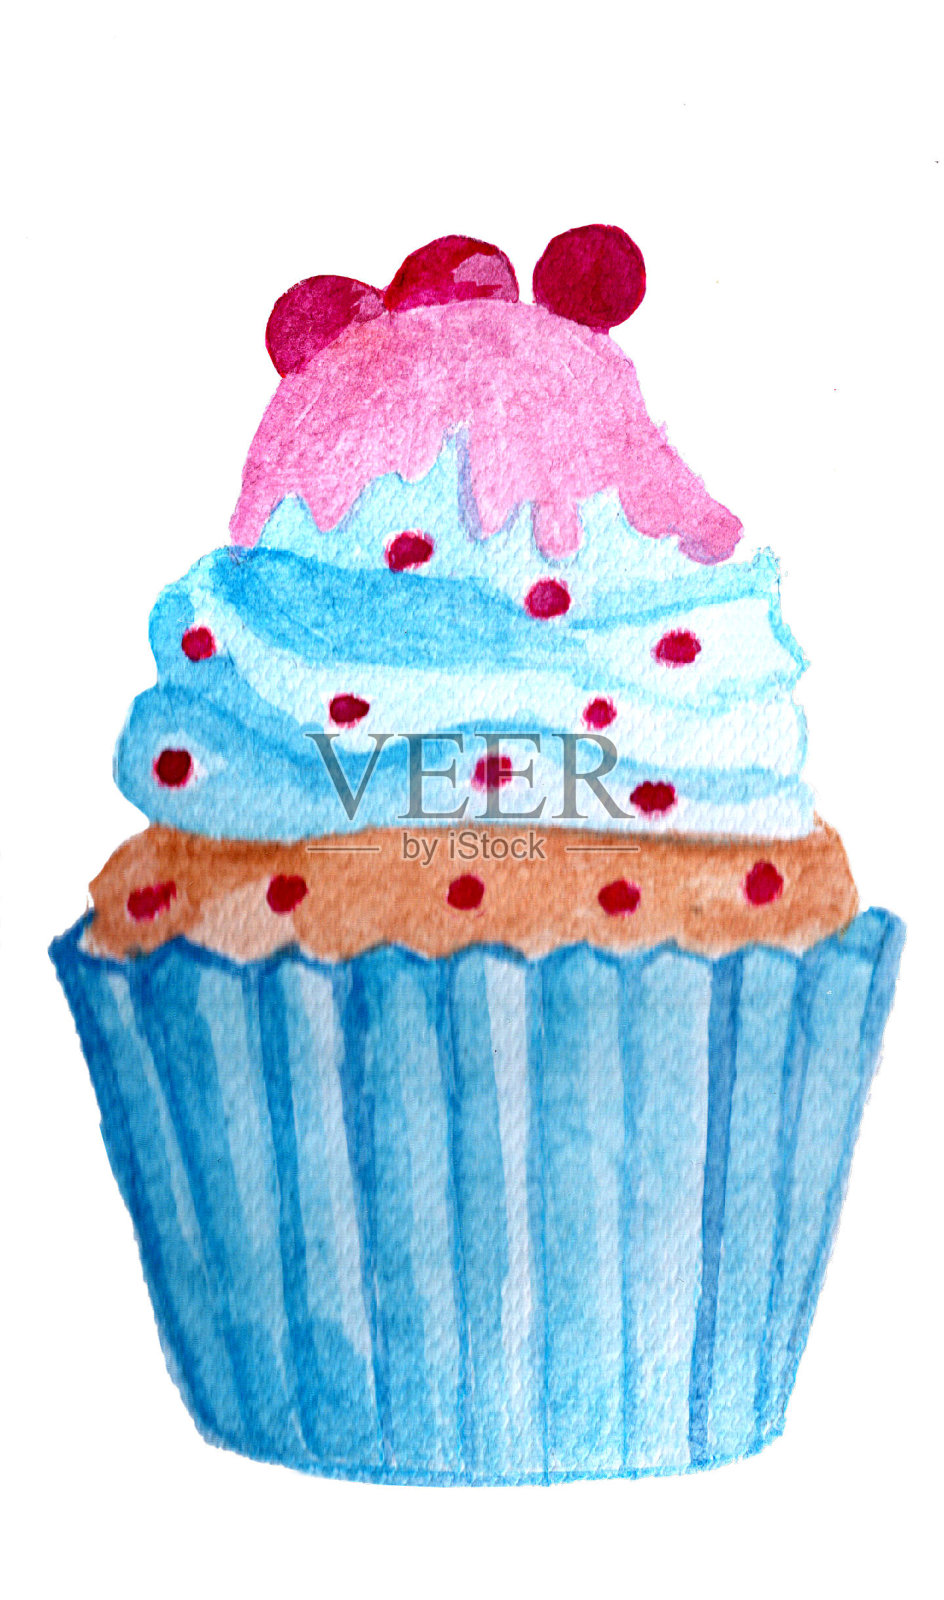 水彩蓝蛋糕插画图片素材